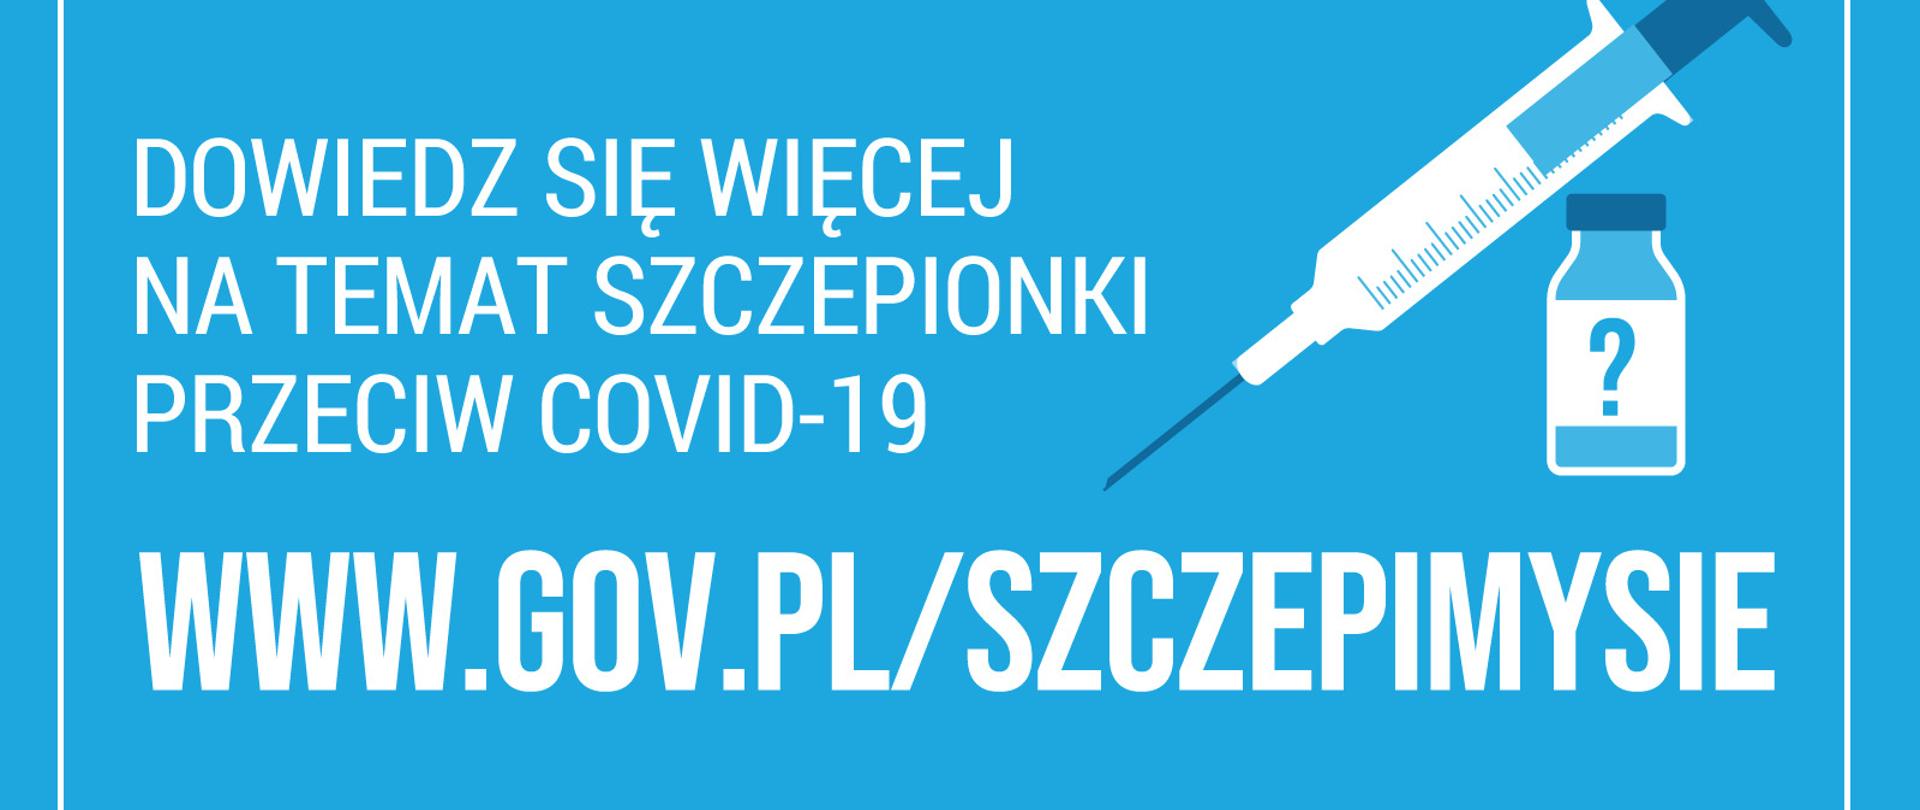 baner informacyjny o szczepieniach przeciwko COVID-19